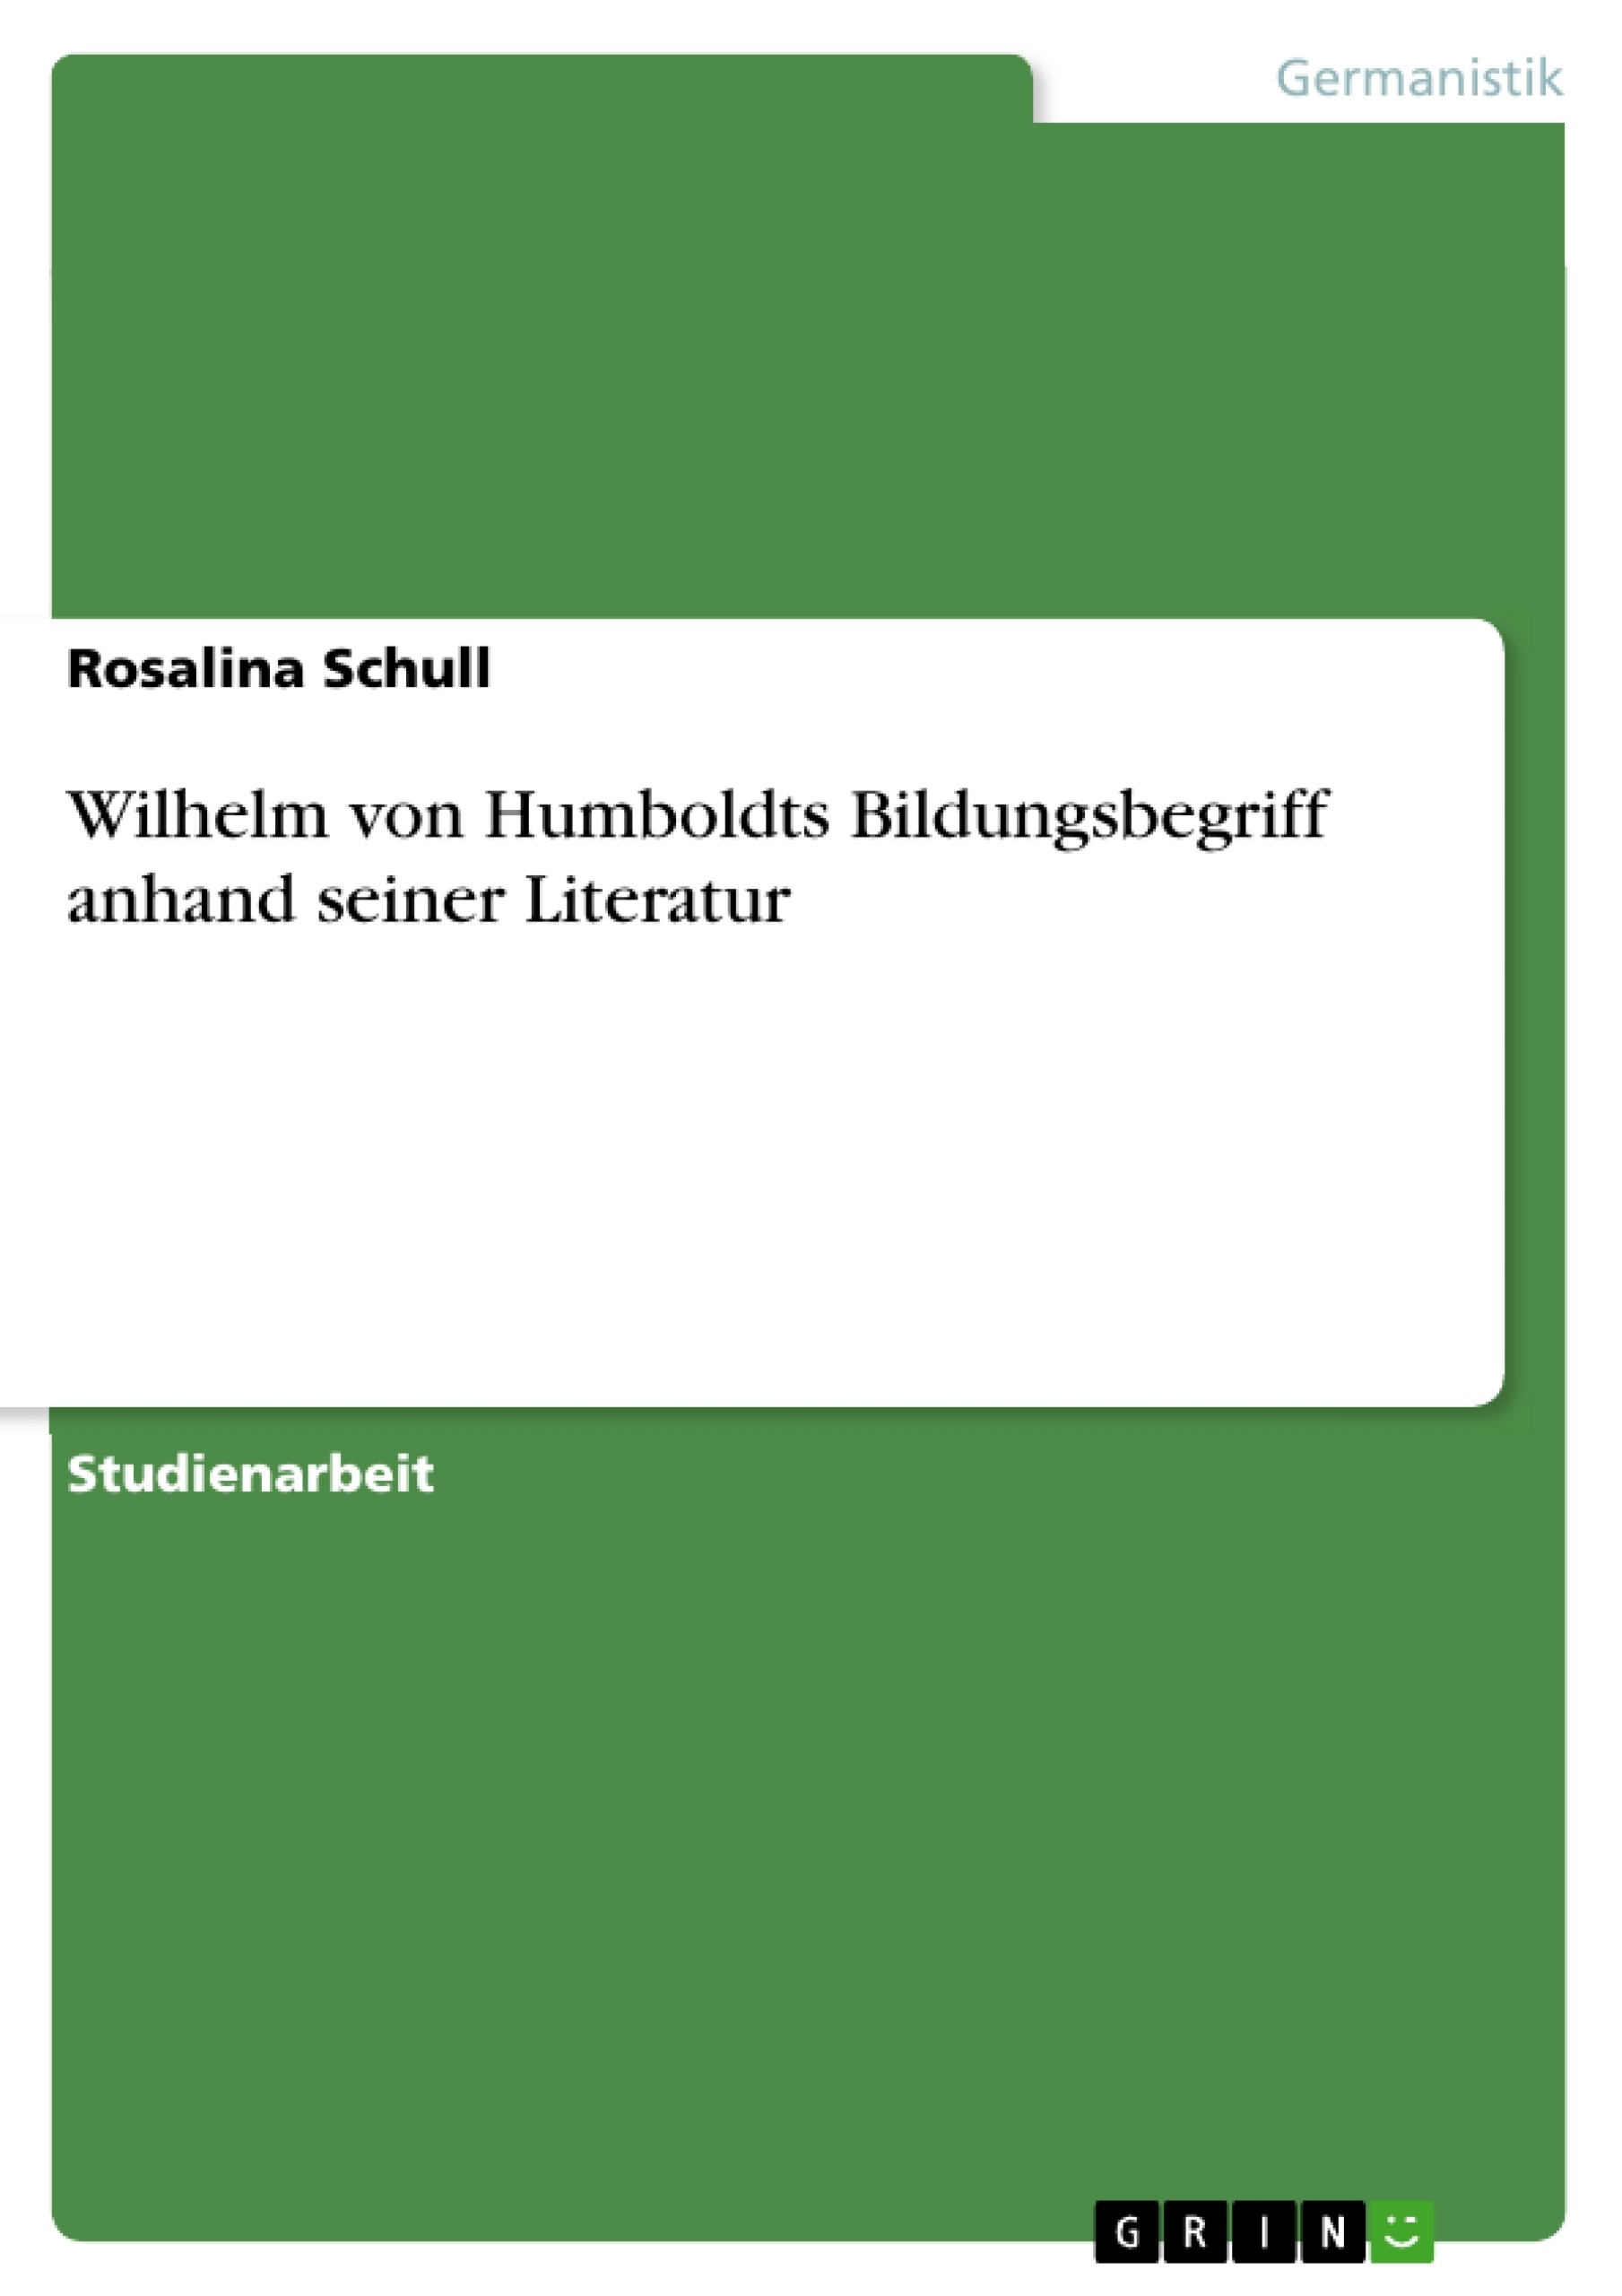 Title: Wilhelm von Humboldts Bildungsbegriff anhand seiner Literatur